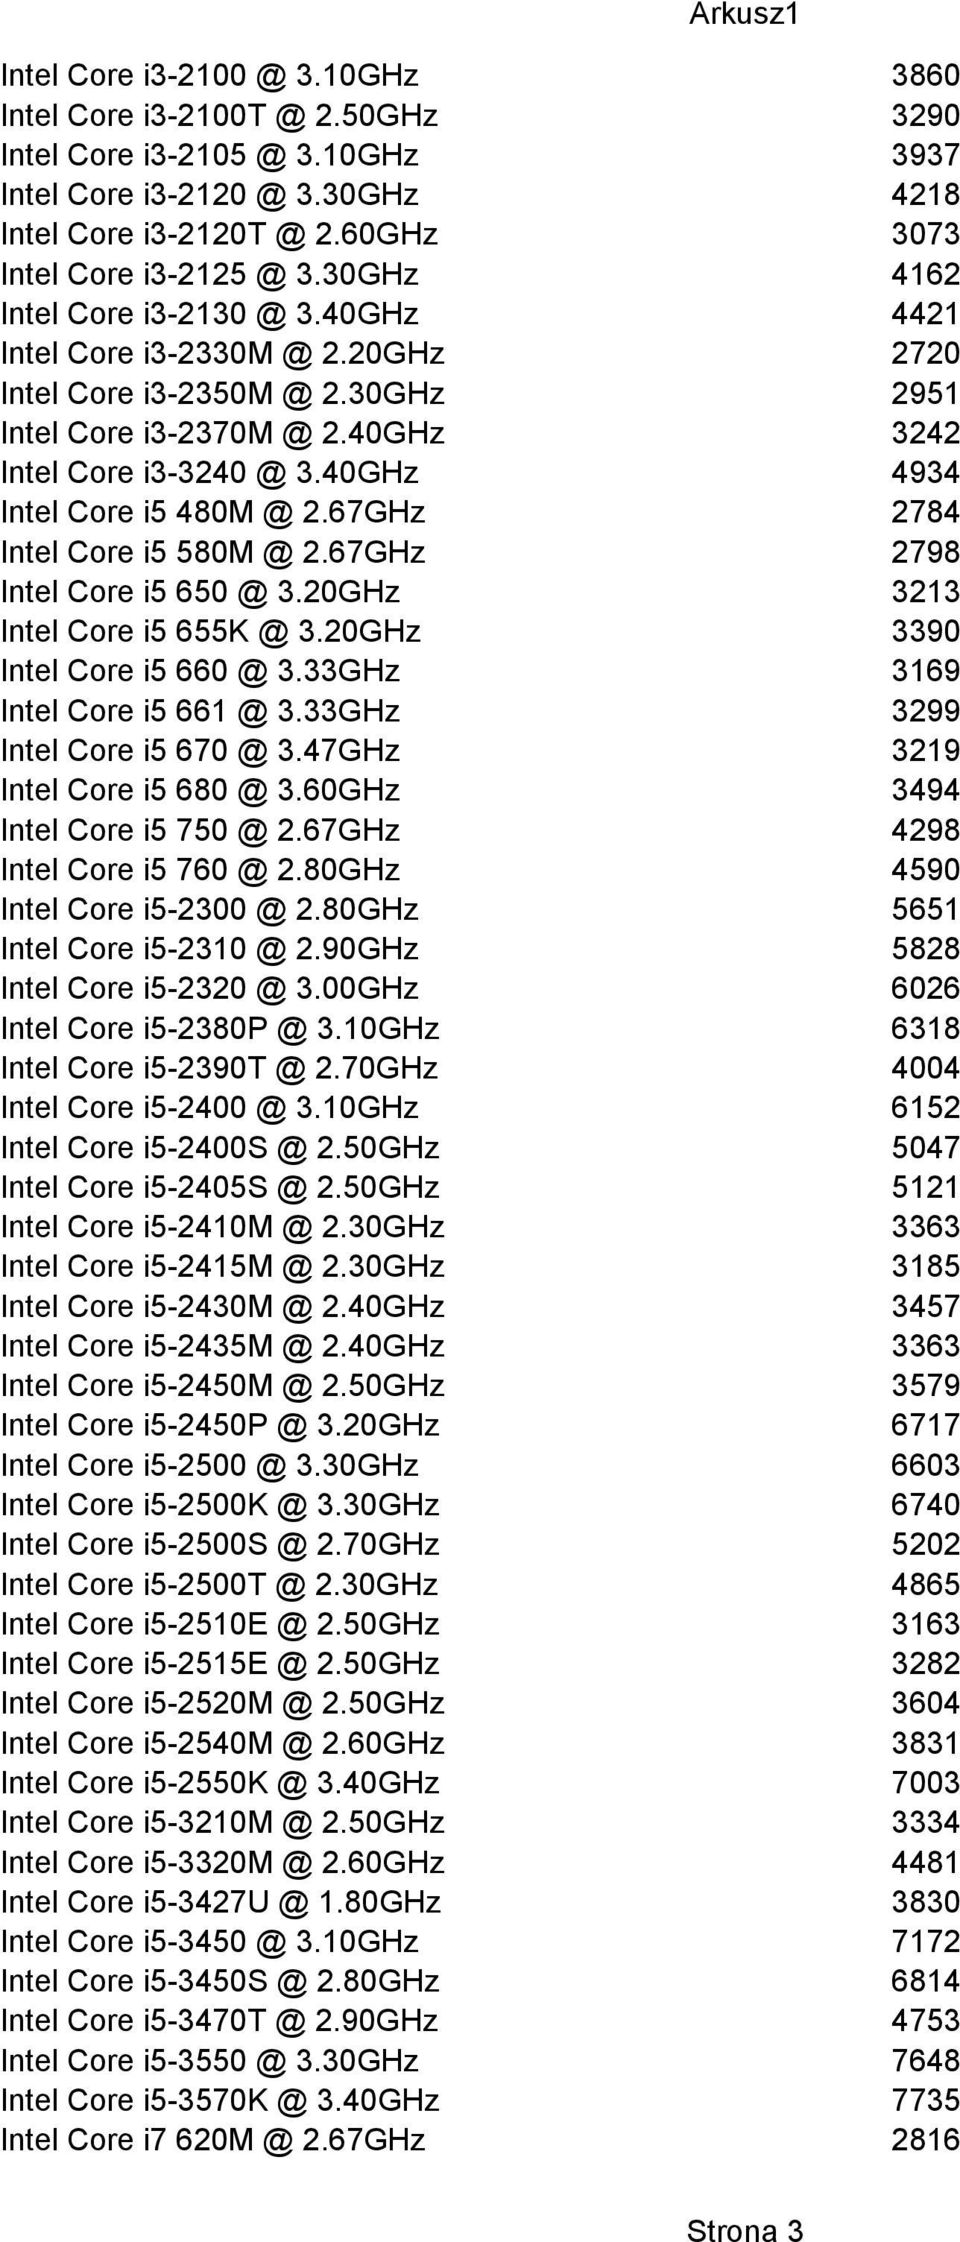 40GHz 4934 Intel Core i5 480M @ 2.67GHz 2784 Intel Core i5 580M @ 2.67GHz 2798 Intel Core i5 650 @ 3.20GHz 3213 Intel Core i5 655K @ 3.20GHz 3390 Intel Core i5 660 @ 3.